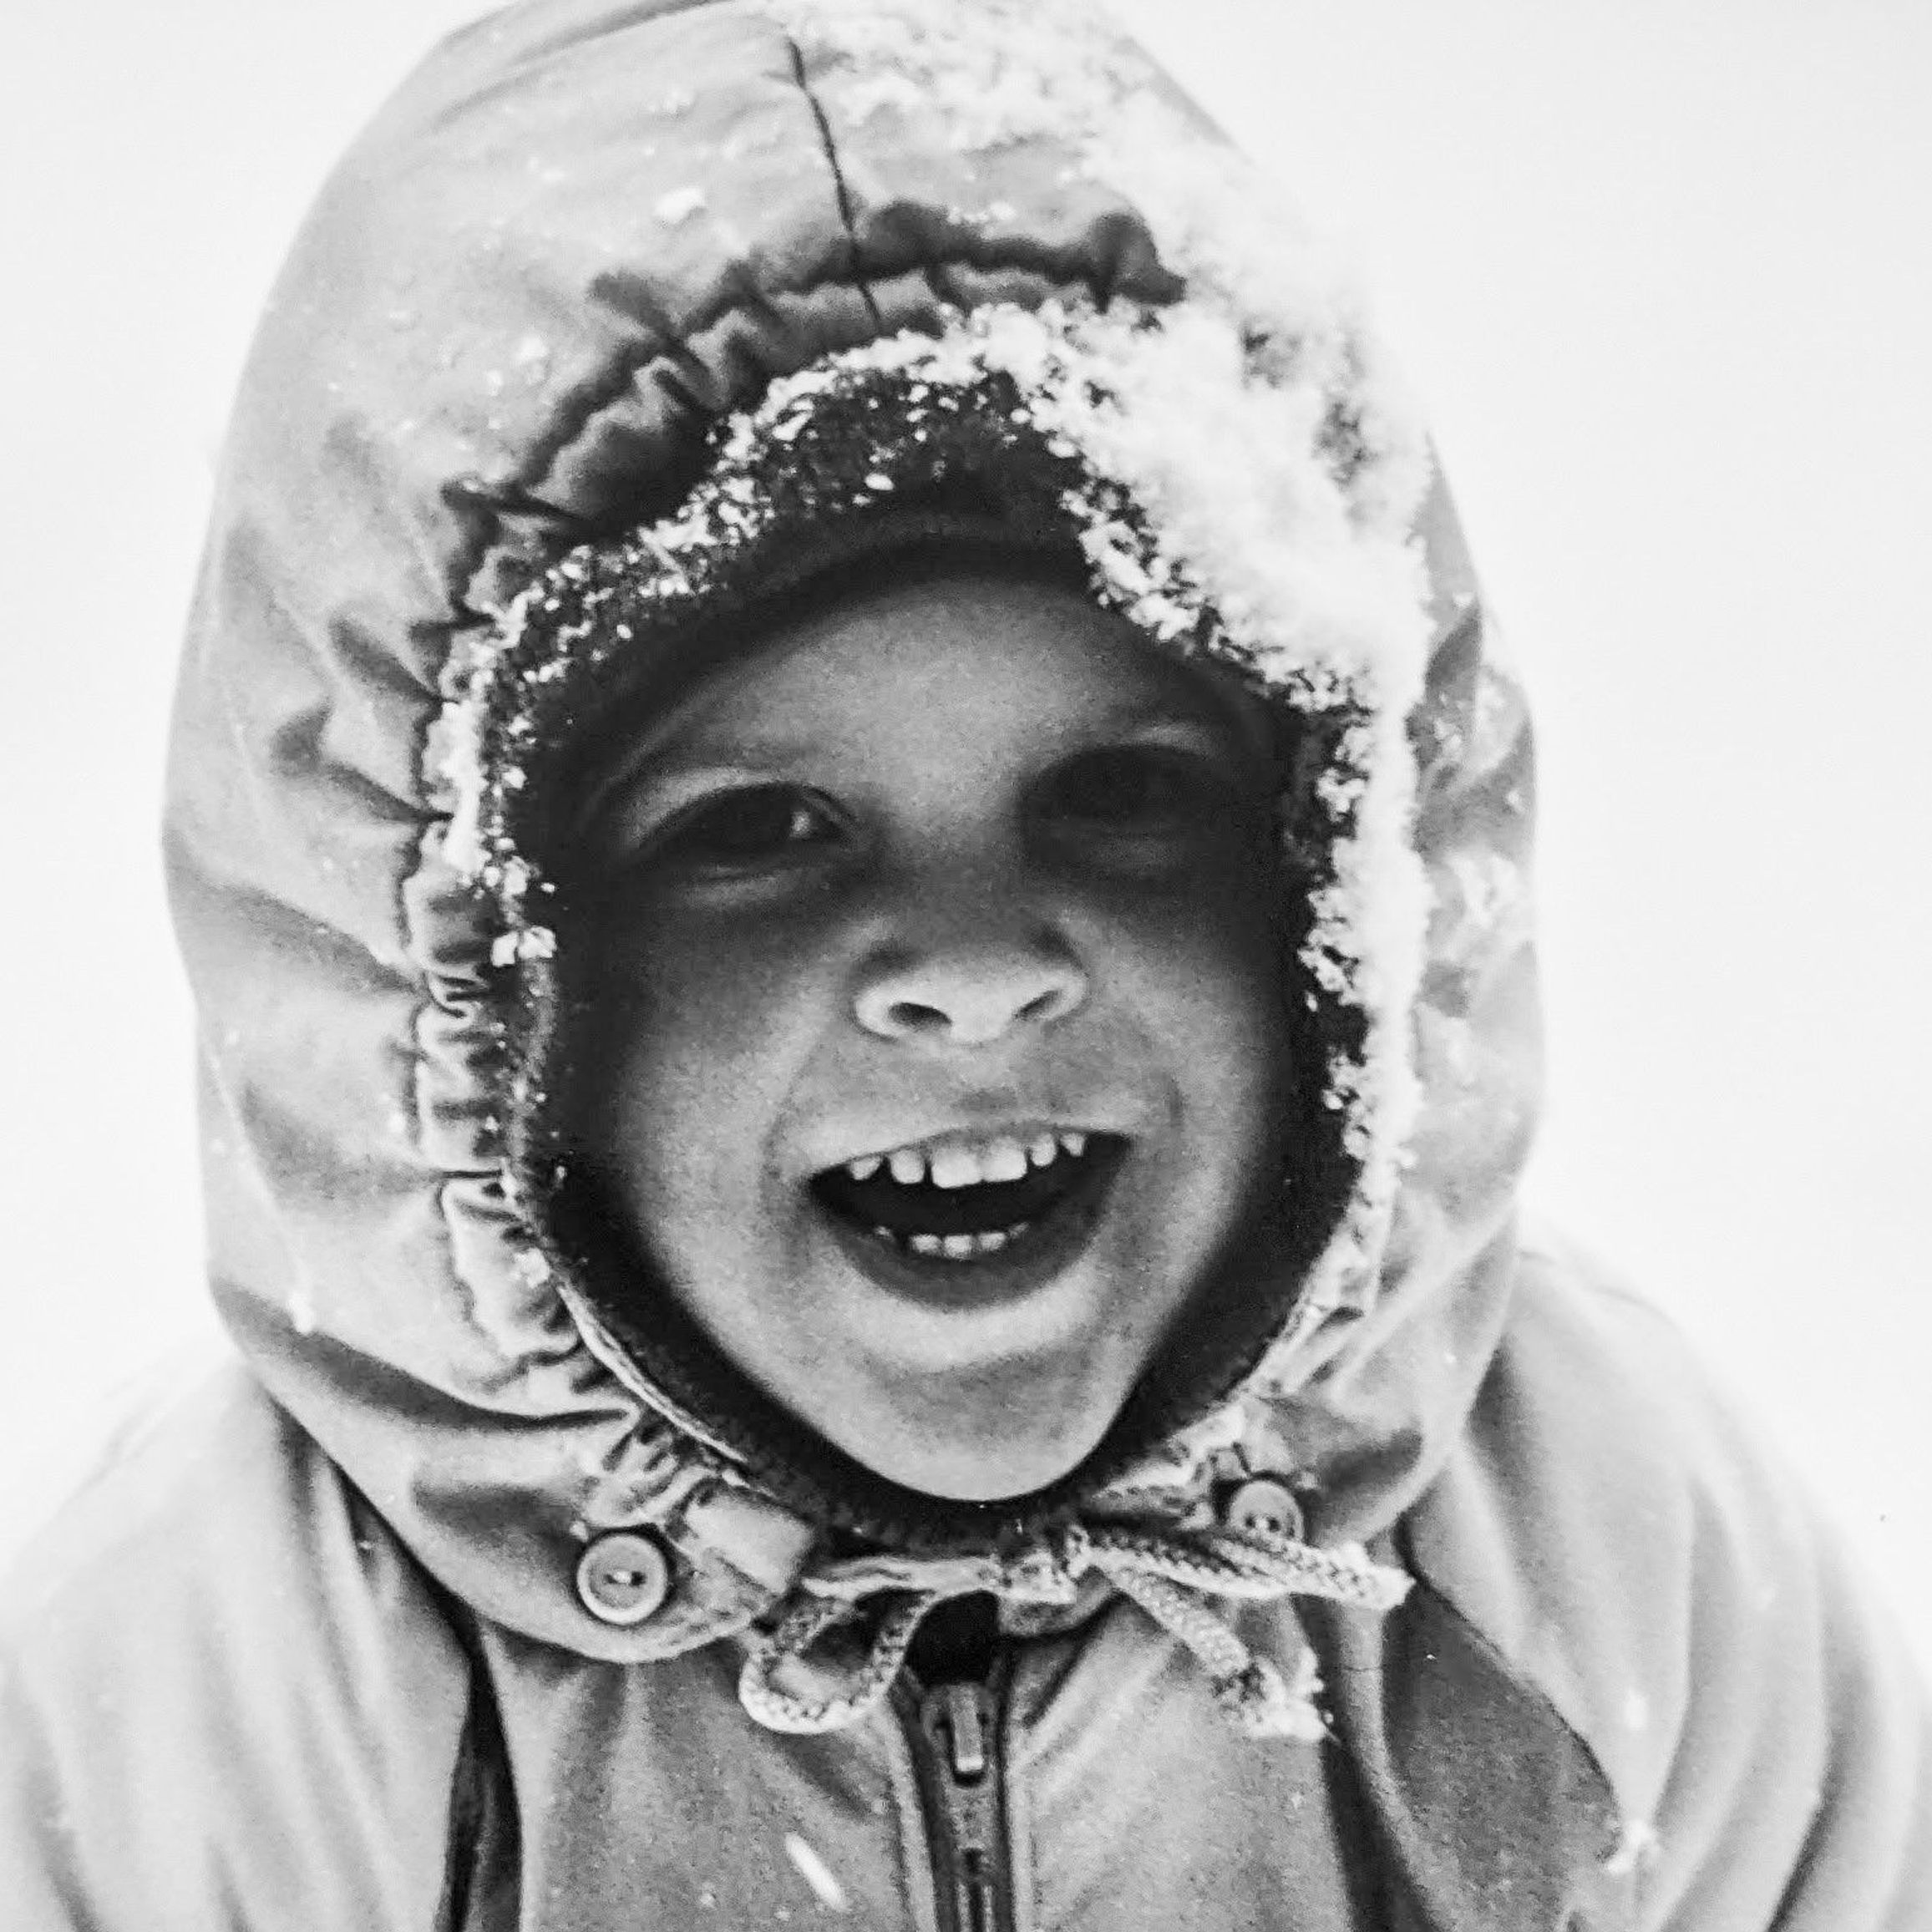 Hannes-Gramberger-Kinderfoto.jpg